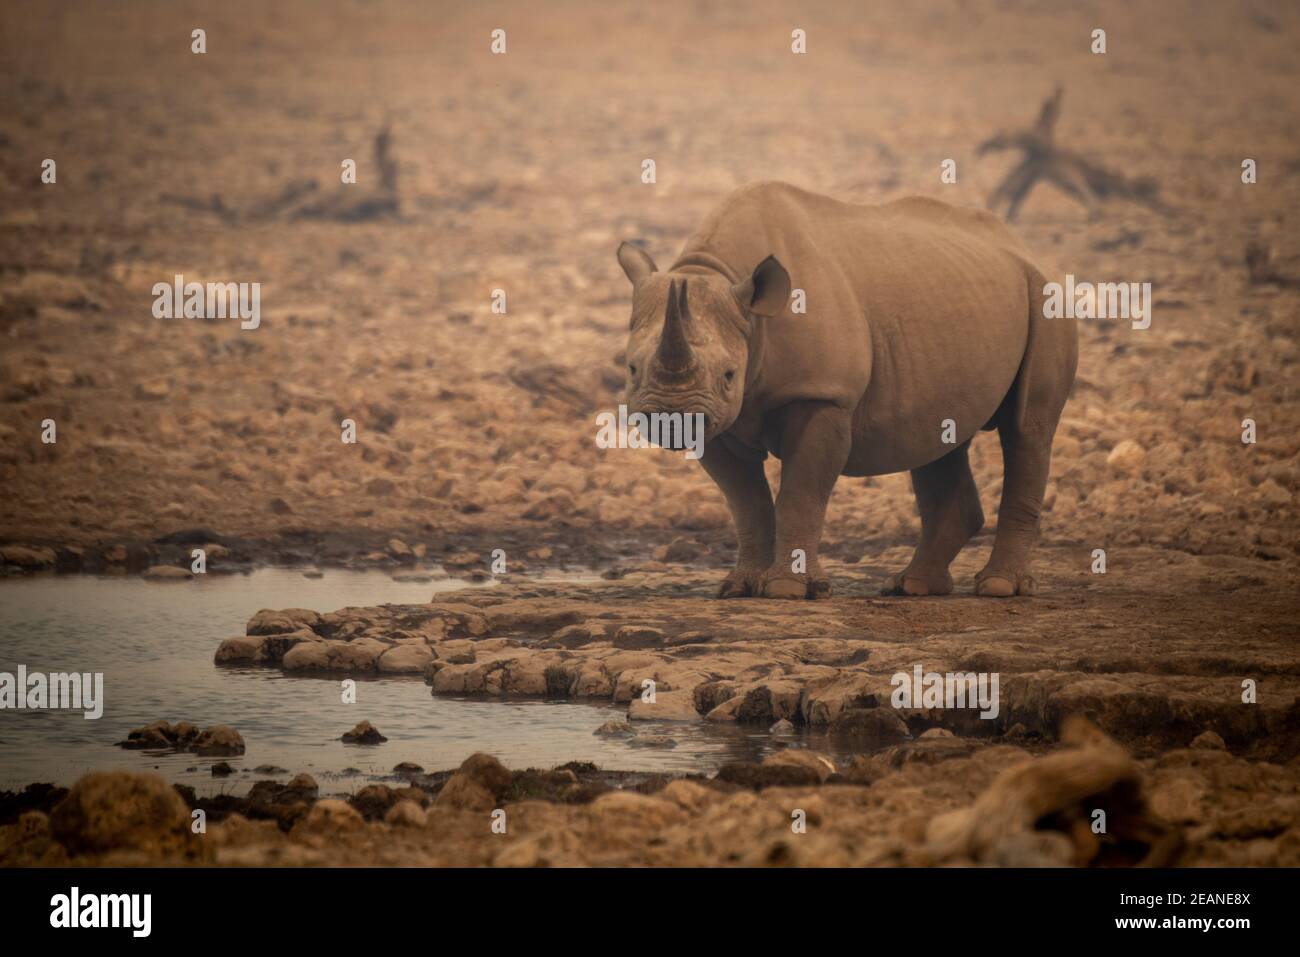 Rinoceronte negro se encuentra entre rocas en neblina Foto de stock